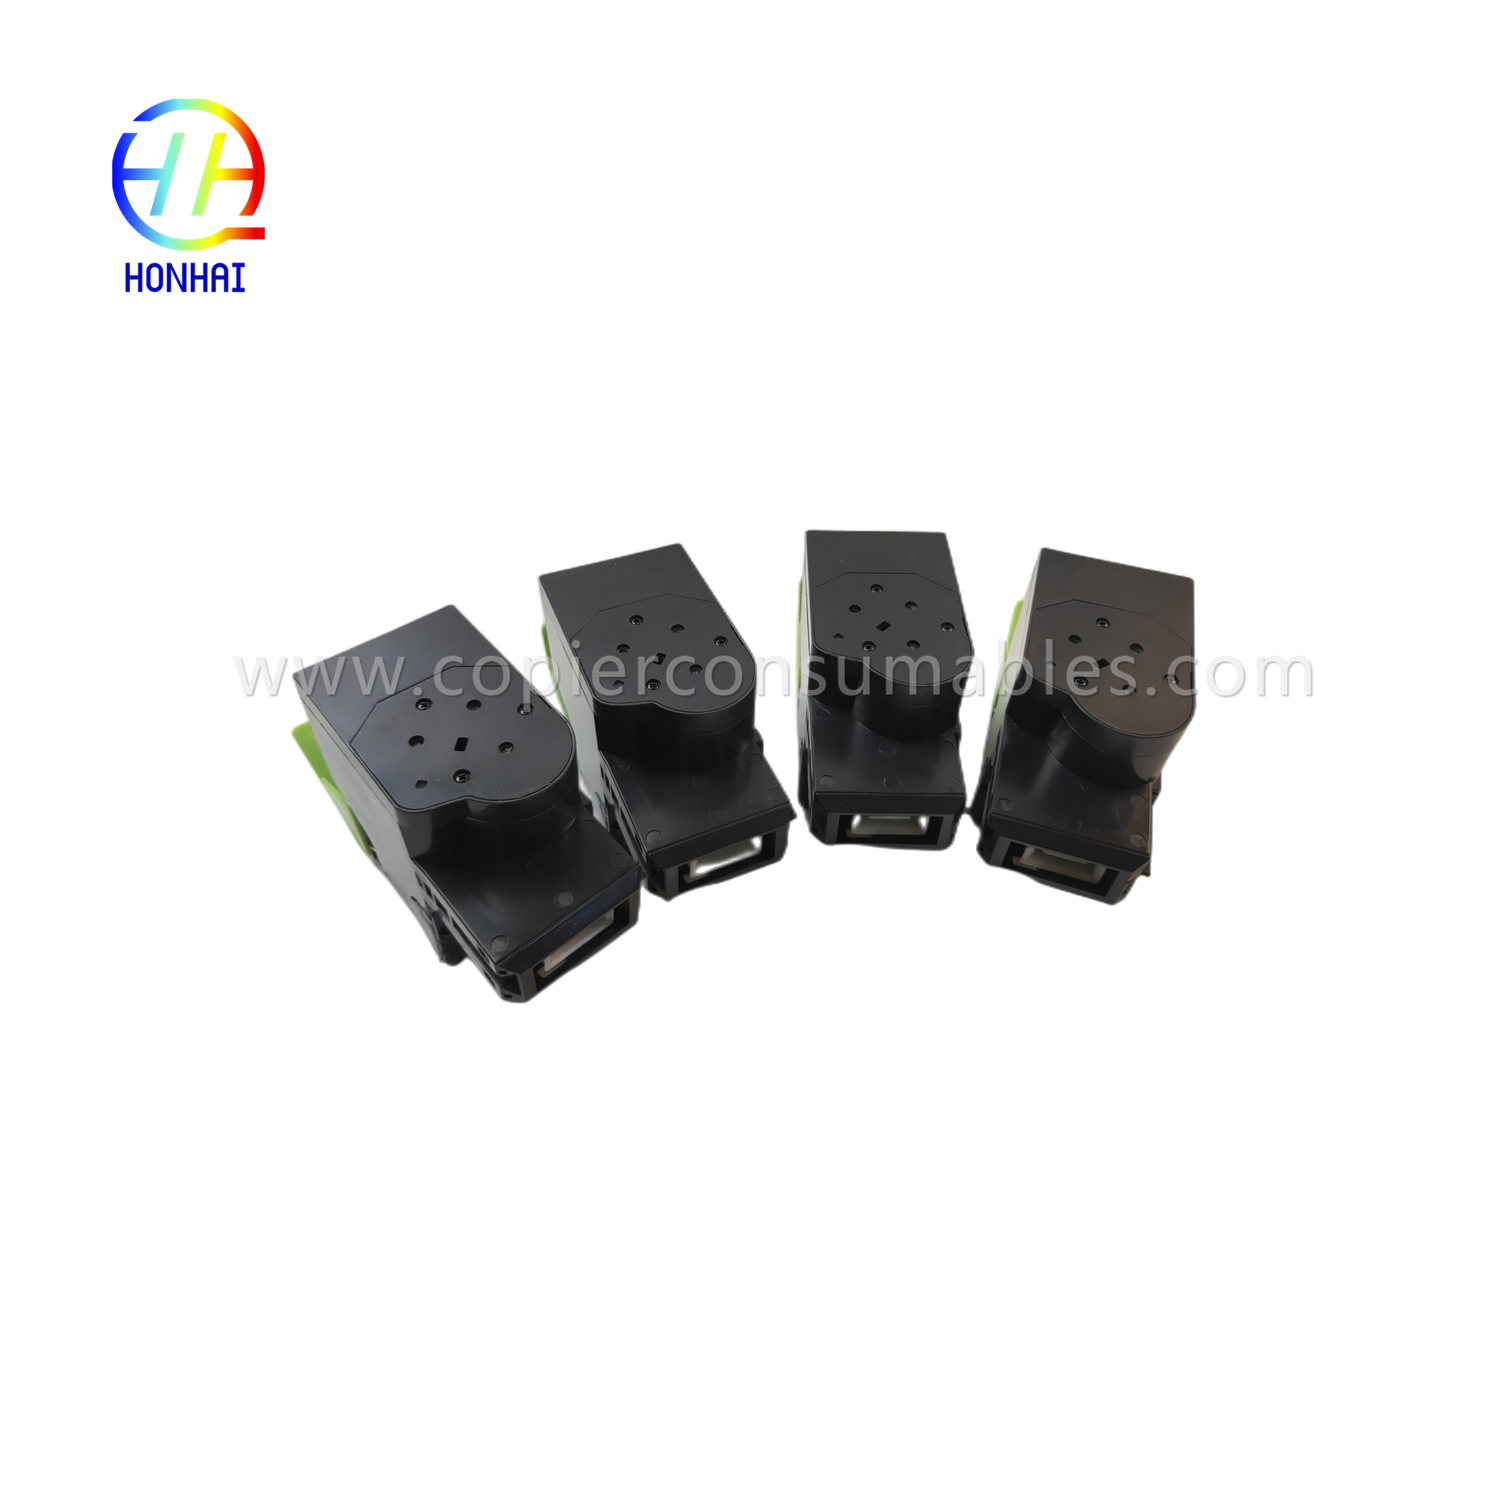 https://c585.goodao.net/toner-cartridgeset-for-epson-wf100-e-2661-e-2670-c13t216092-product/